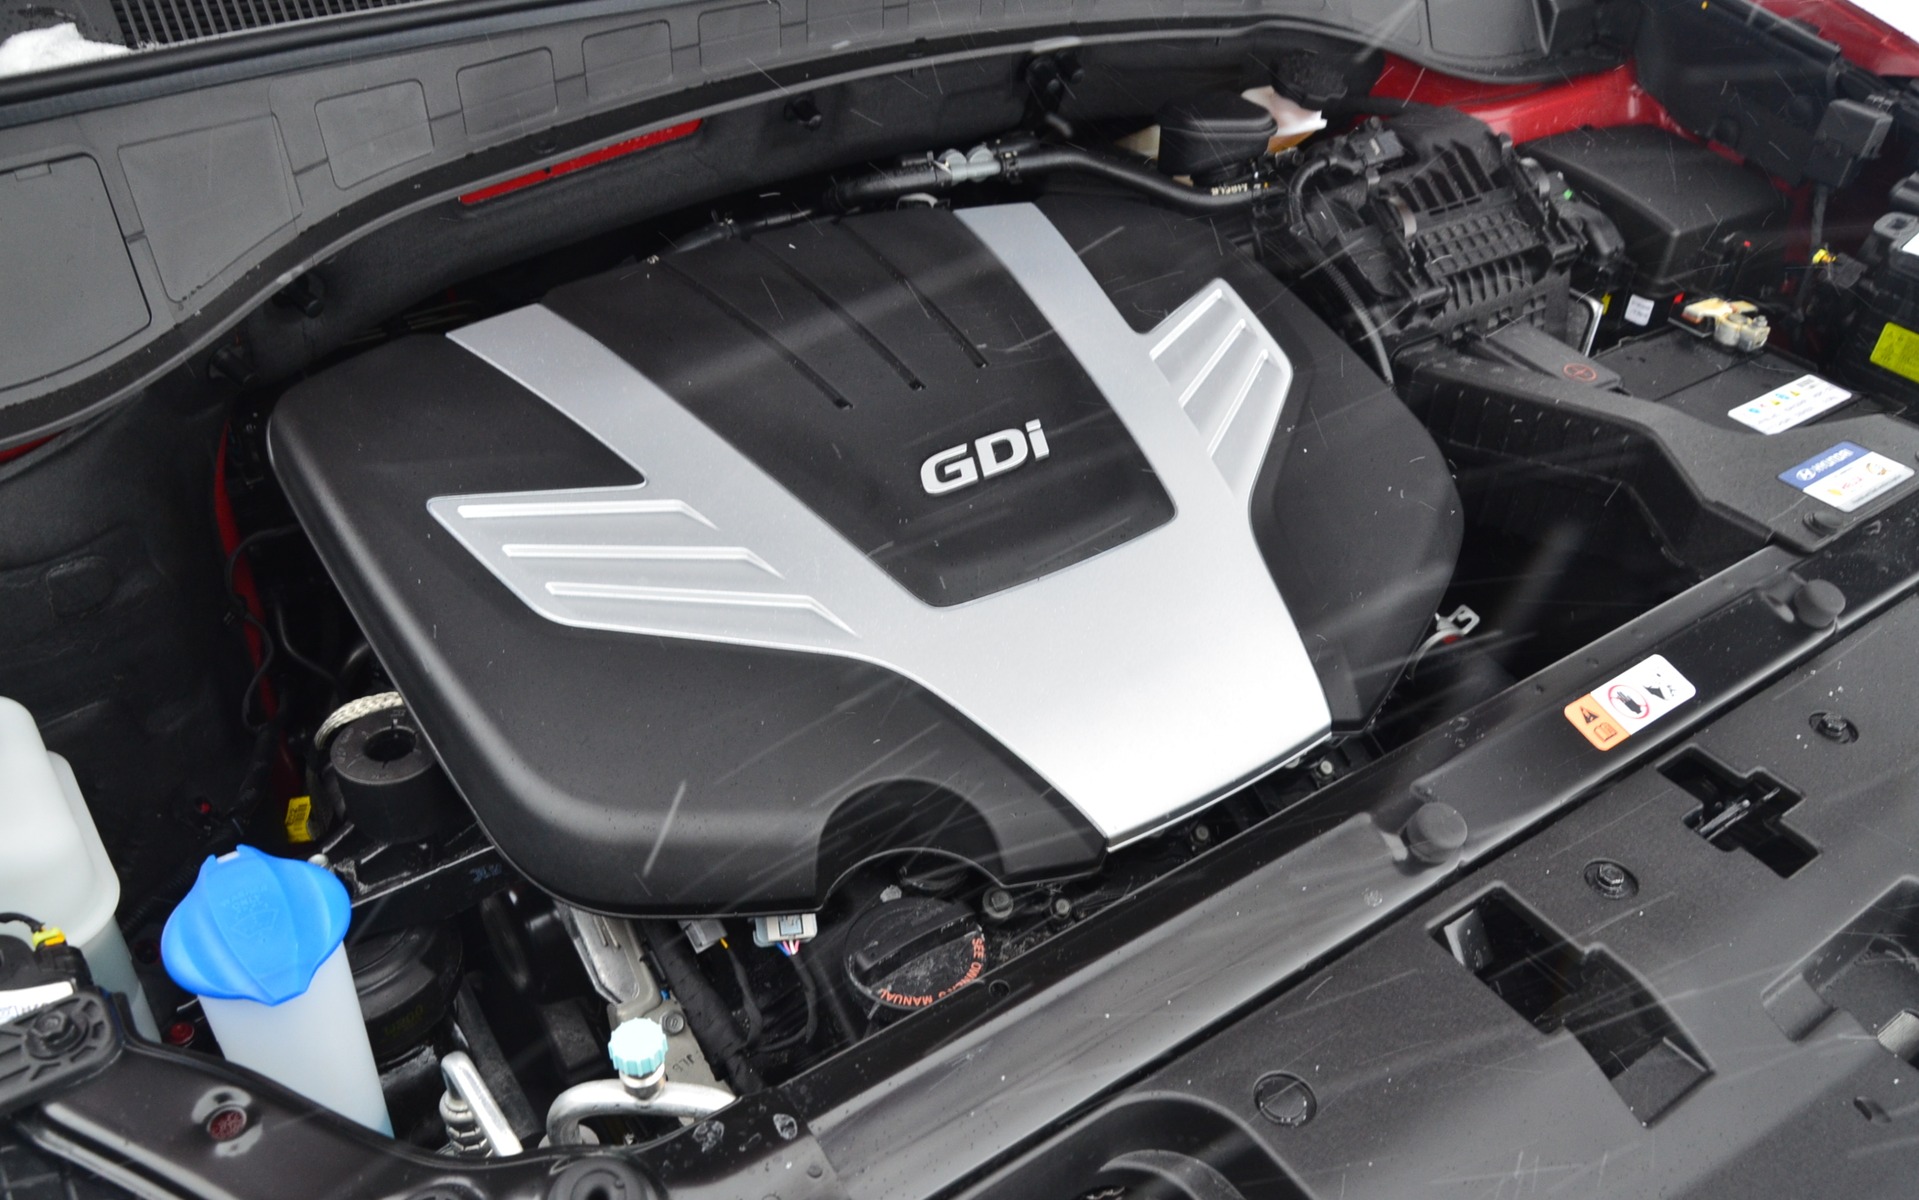 3.3-litre V6 with 290 horsepower.